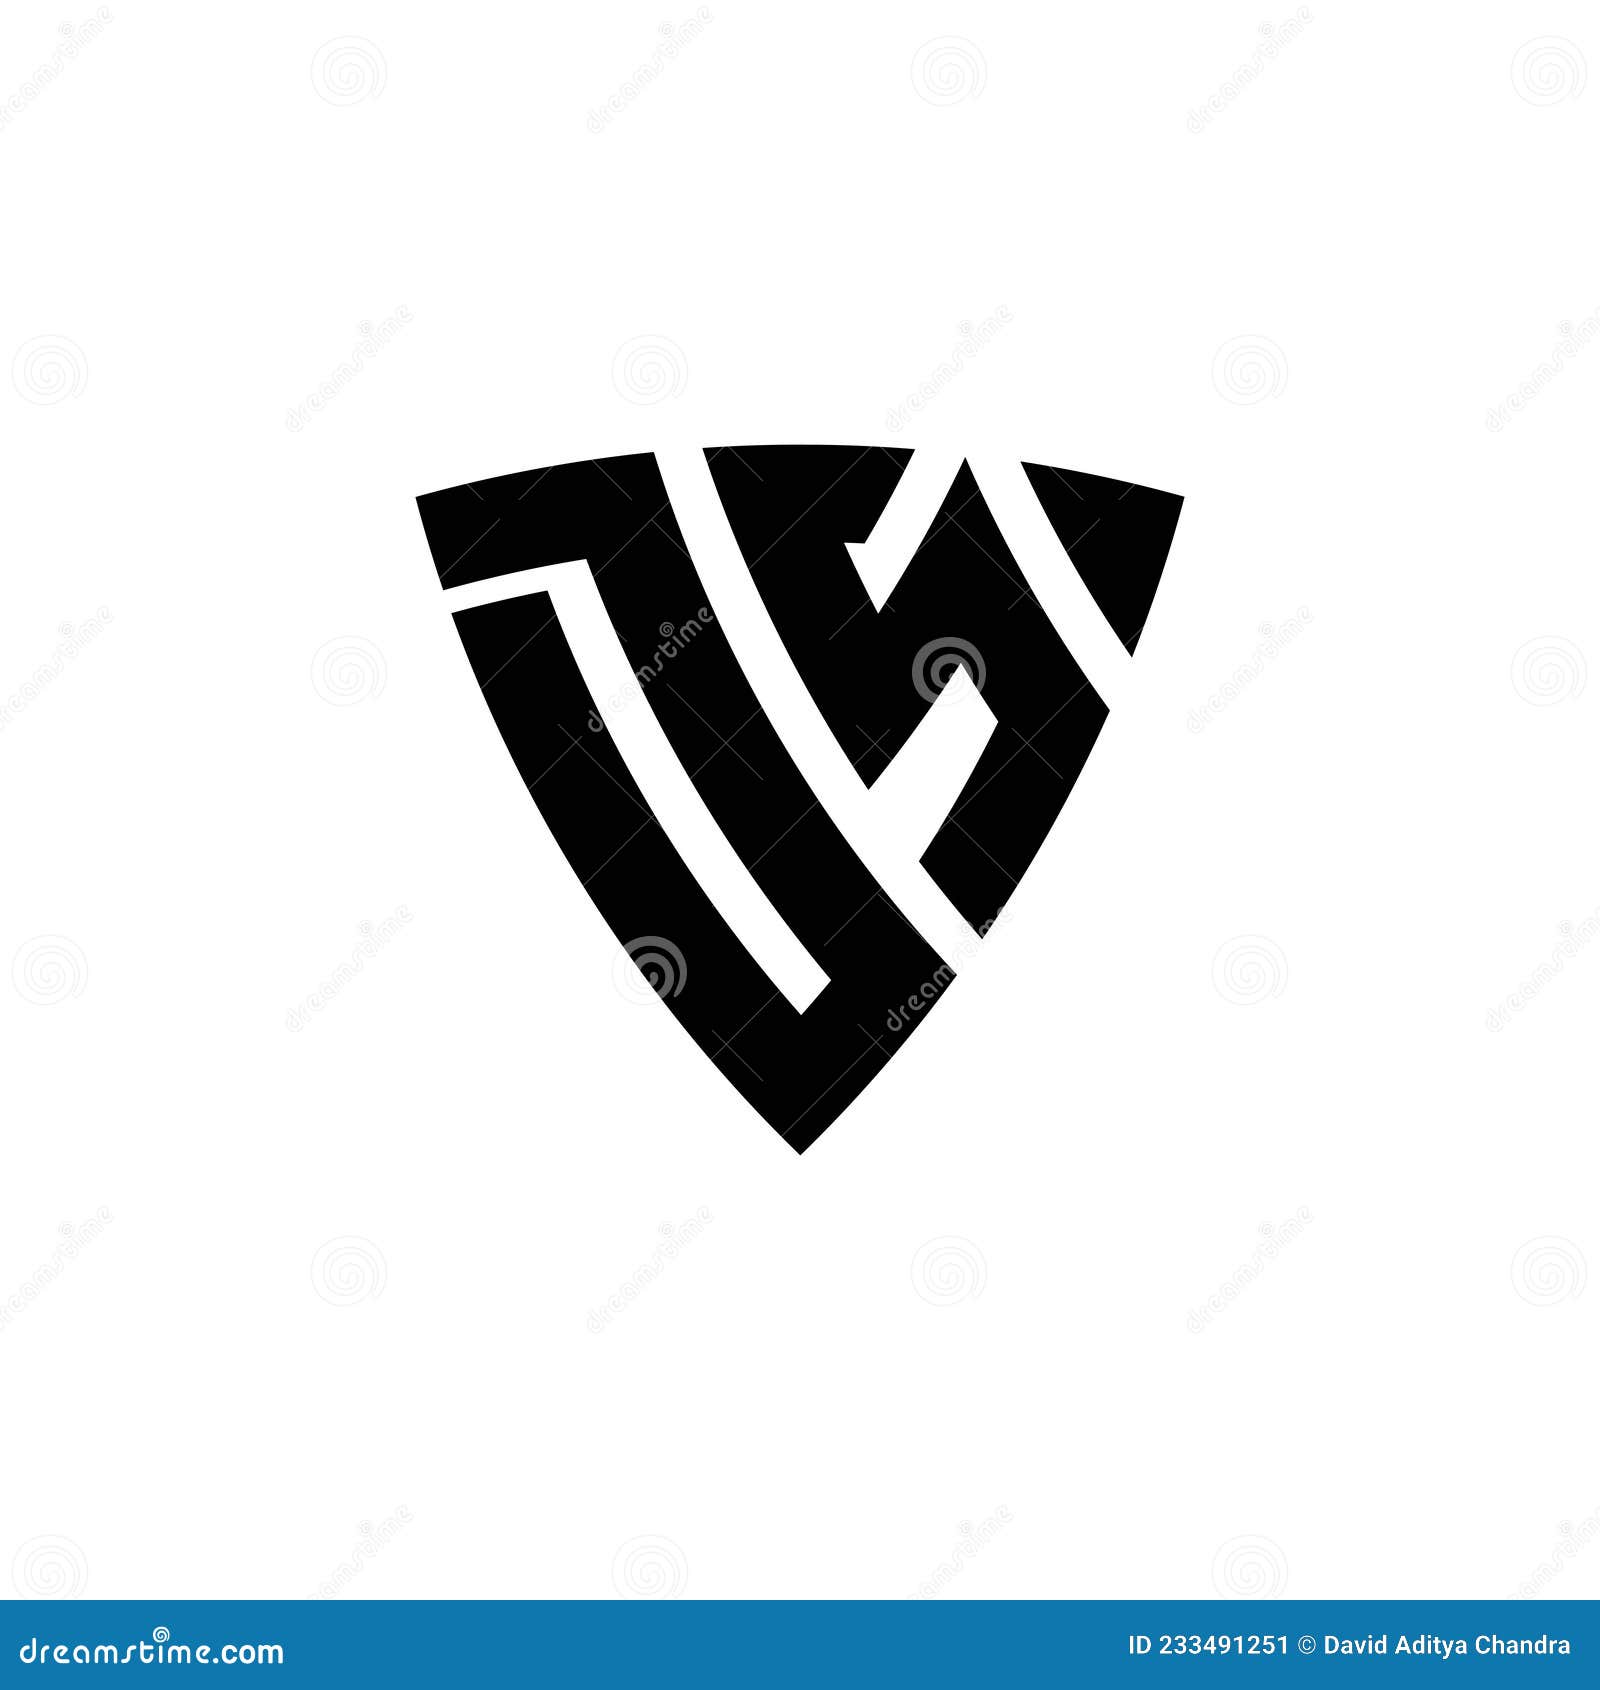 Ds logo monogram with emblem shield design Vector Image